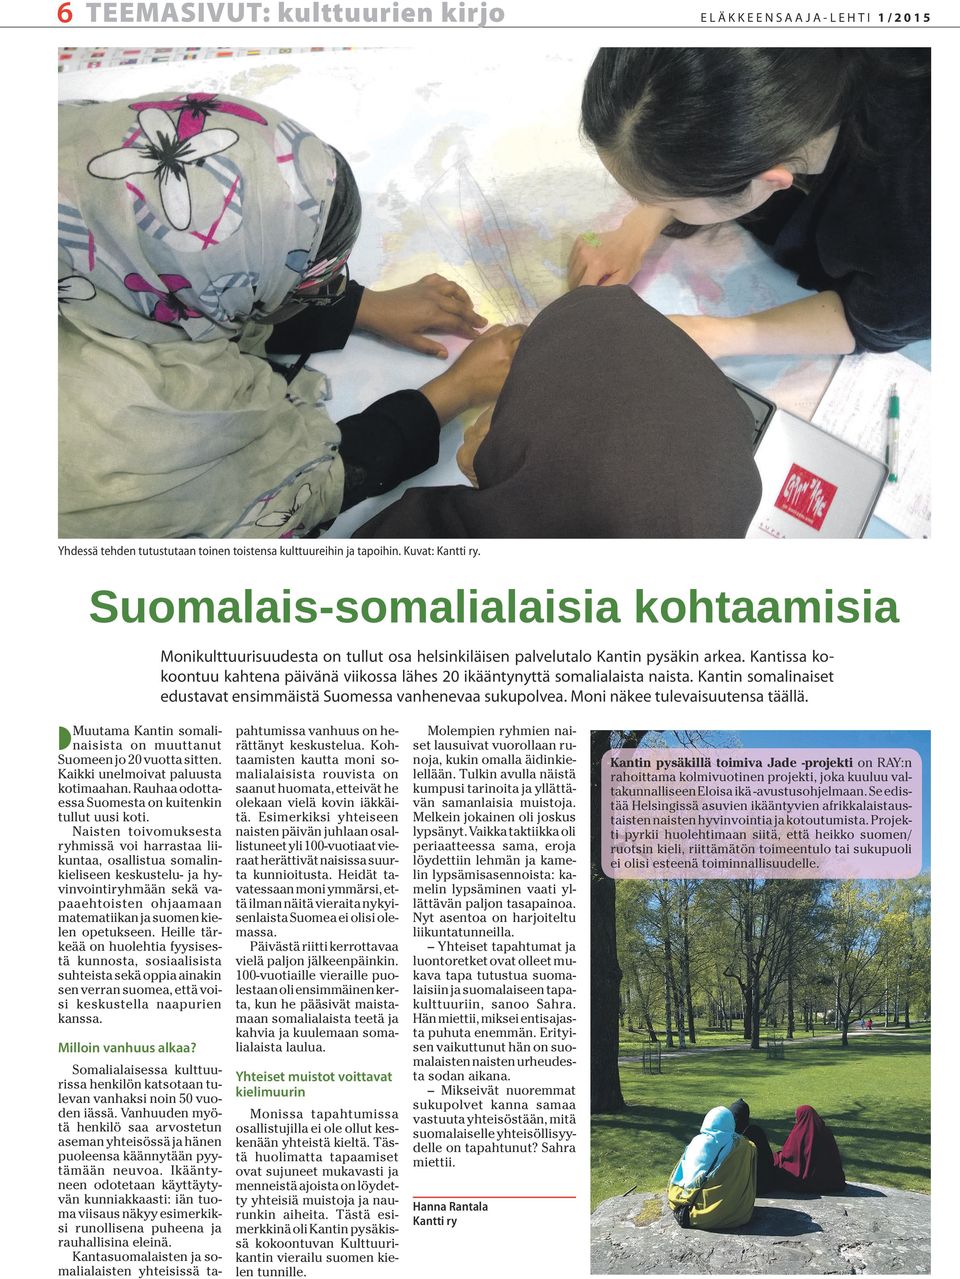 Kantissa kokoontuu kahtena päivänä viikossa lähes 20 ikääntynyttä somalialaista naista. Kantin somalinaiset edustavat ensimmäistä Suomessa vanhenevaa sukupolvea. Moni näkee tulevaisuutensa täällä.